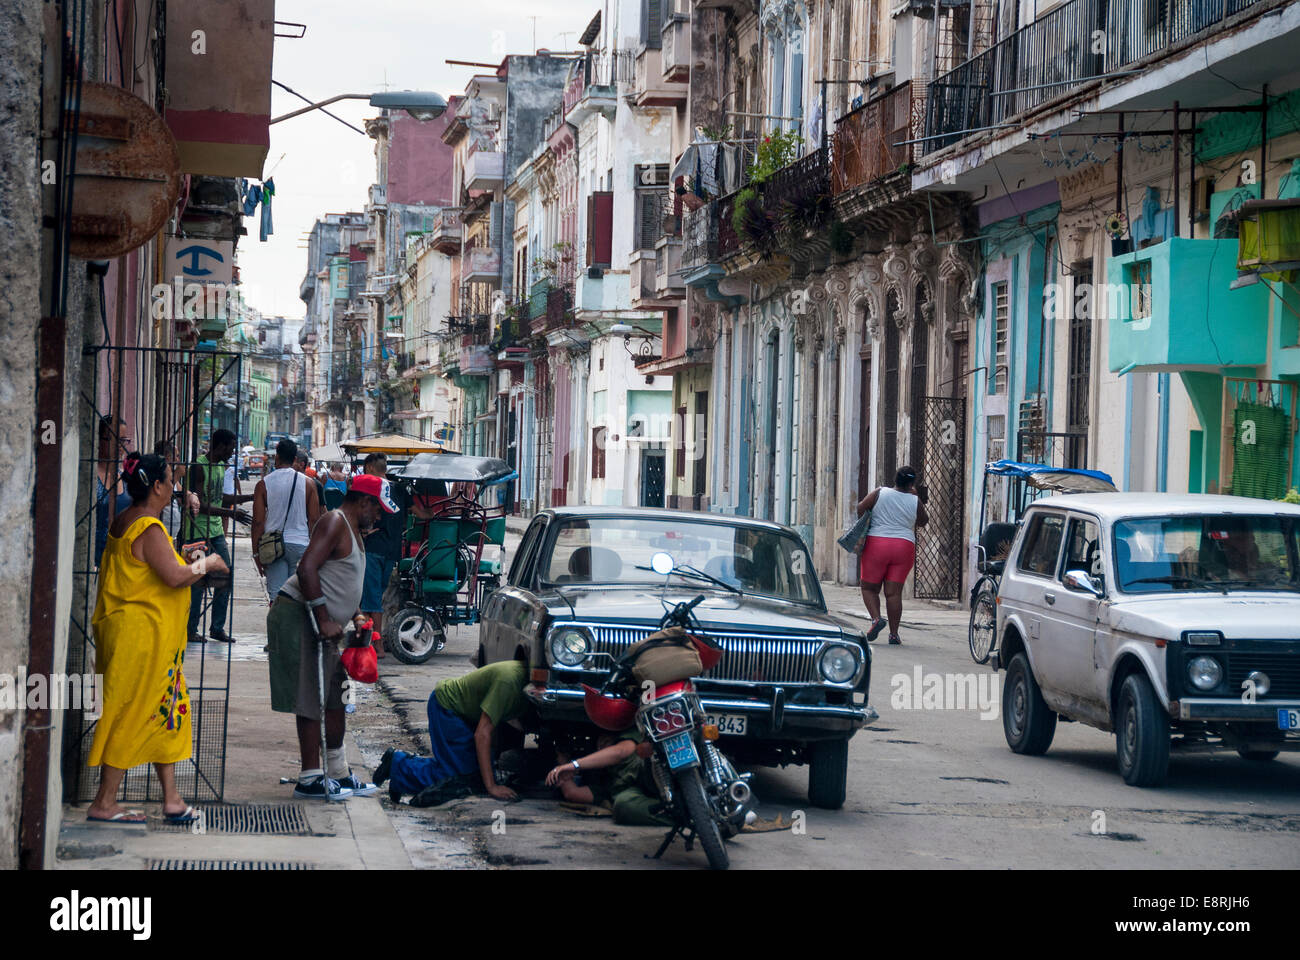 La Habana, Cuba - los espectadores ver como dos hombres intentan hacer reparaciones improvisadas en un coche clásicos americanos en una céntrica calle de La Habana. Foto de stock